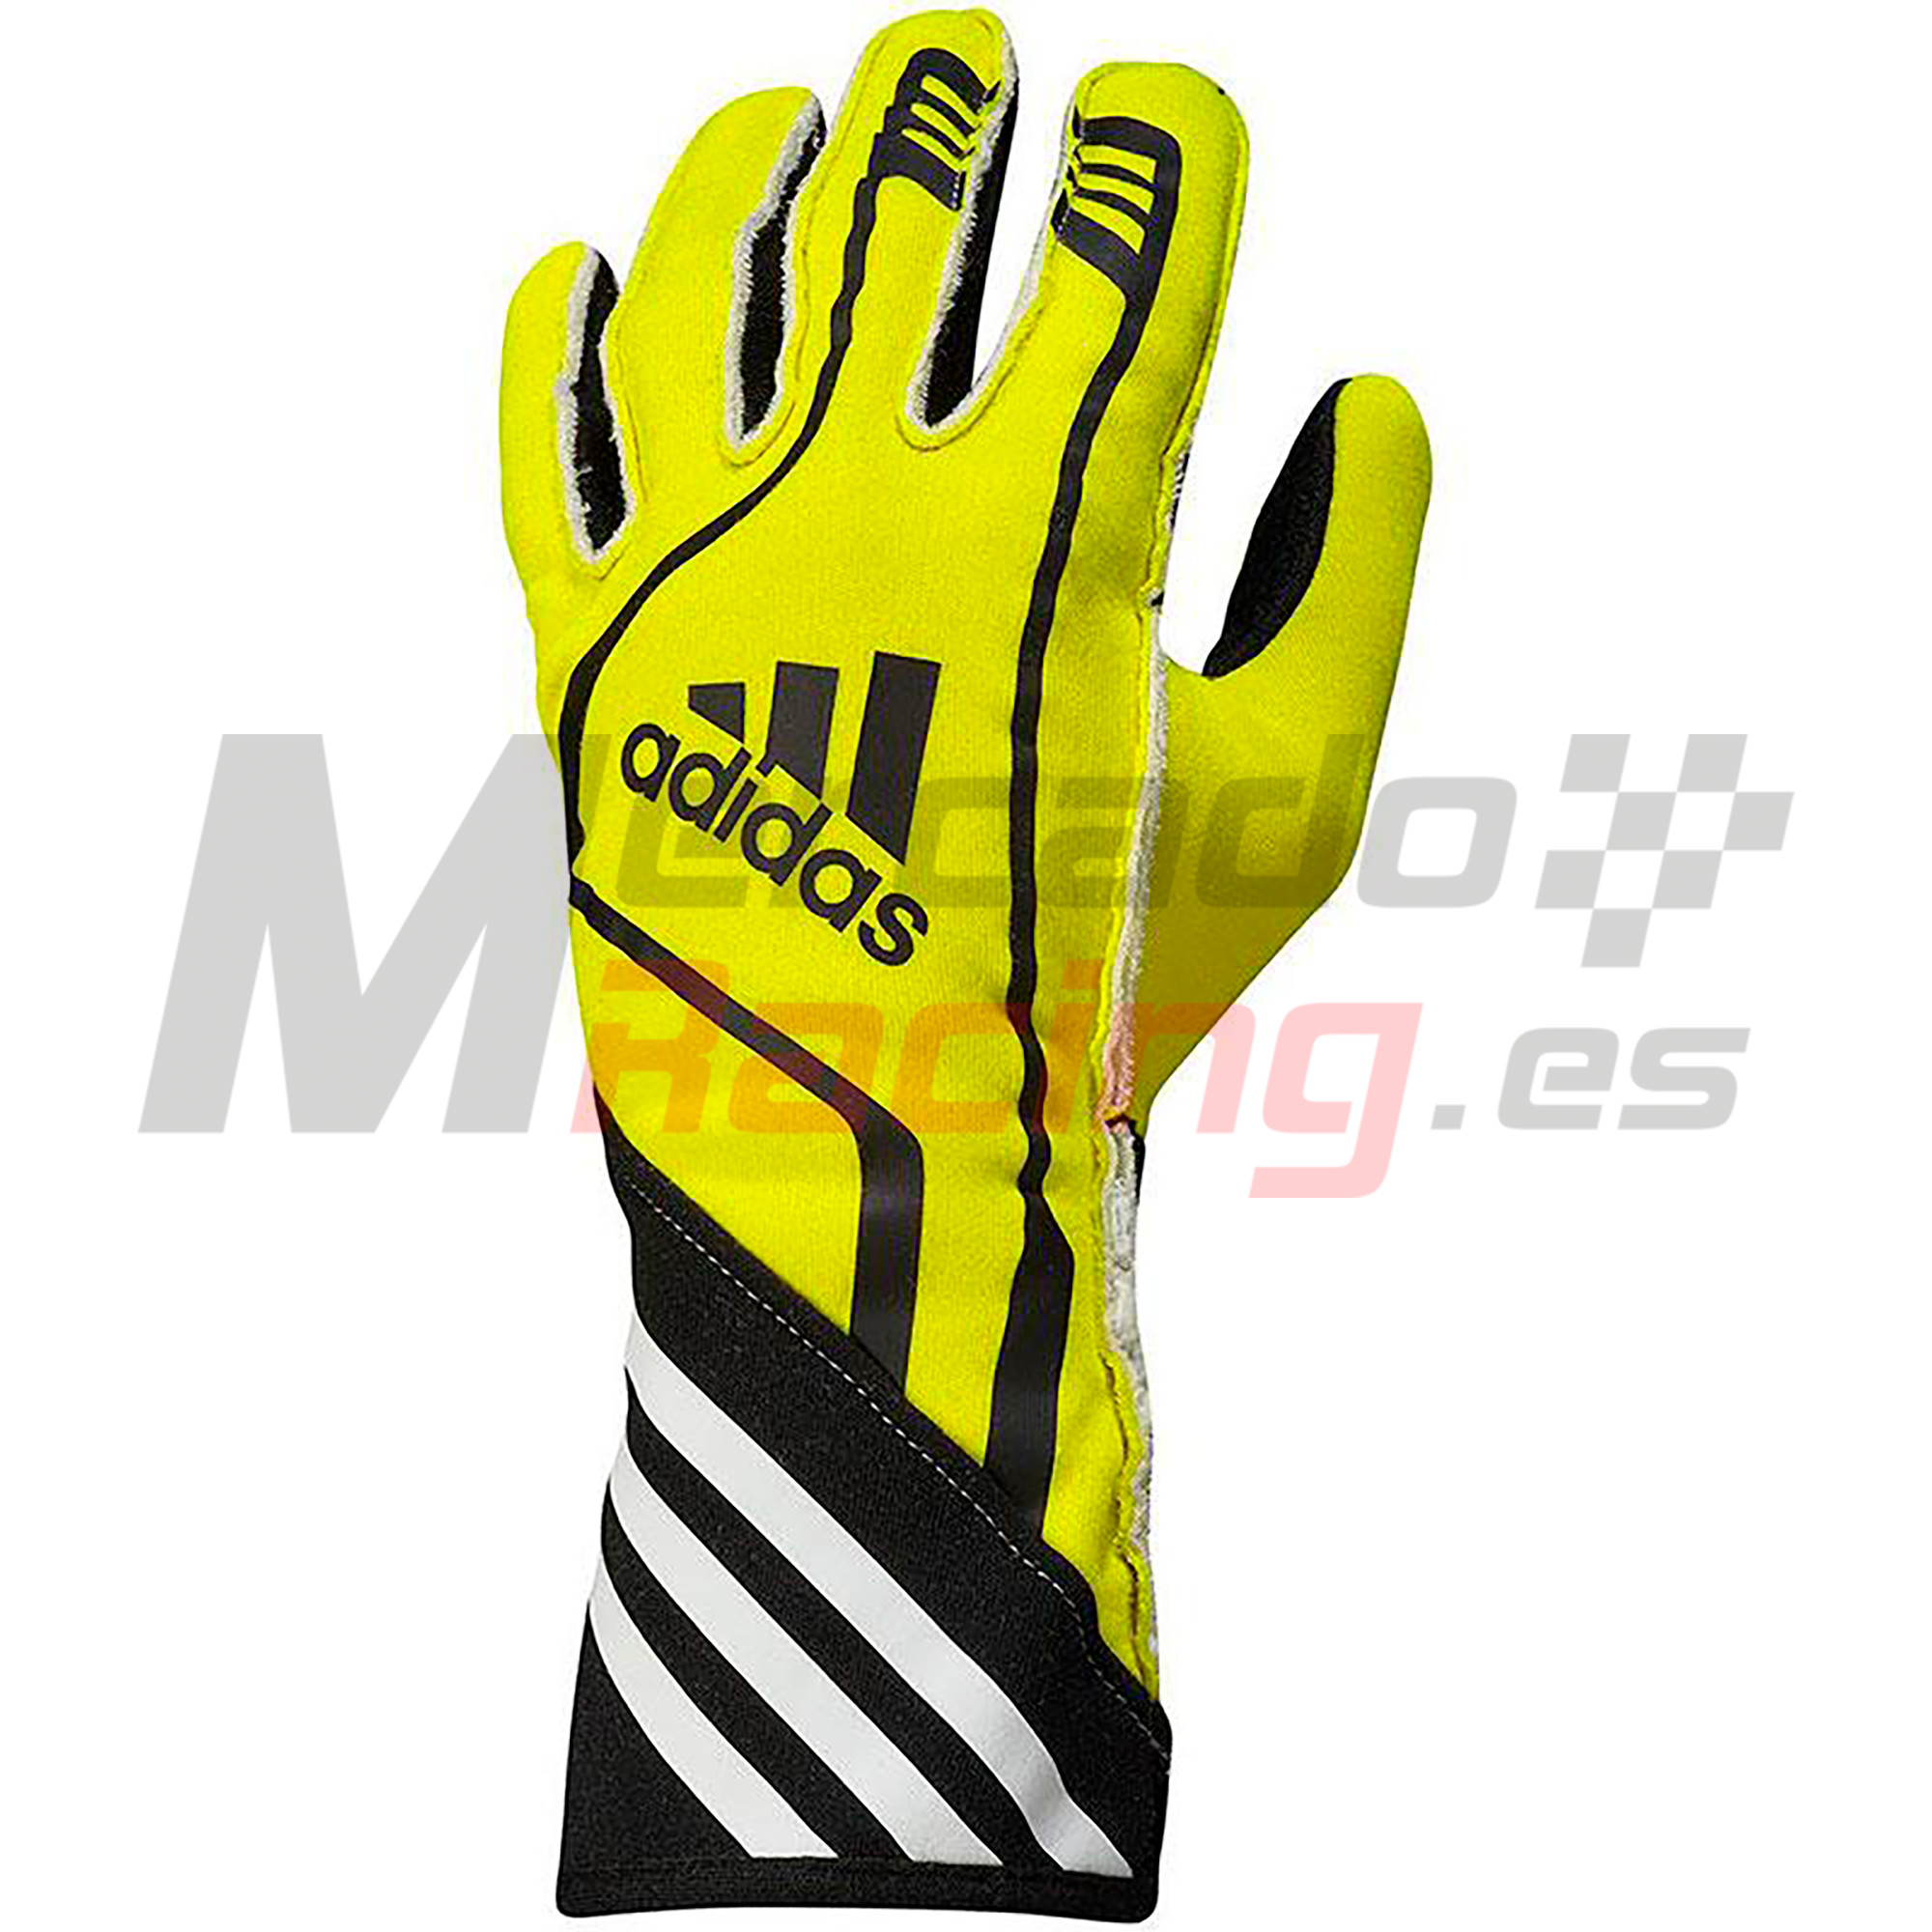 Regulación arco mensual Adidas RSR Glove Fluo/Yellow/Black - Tienda de Mercadoracing